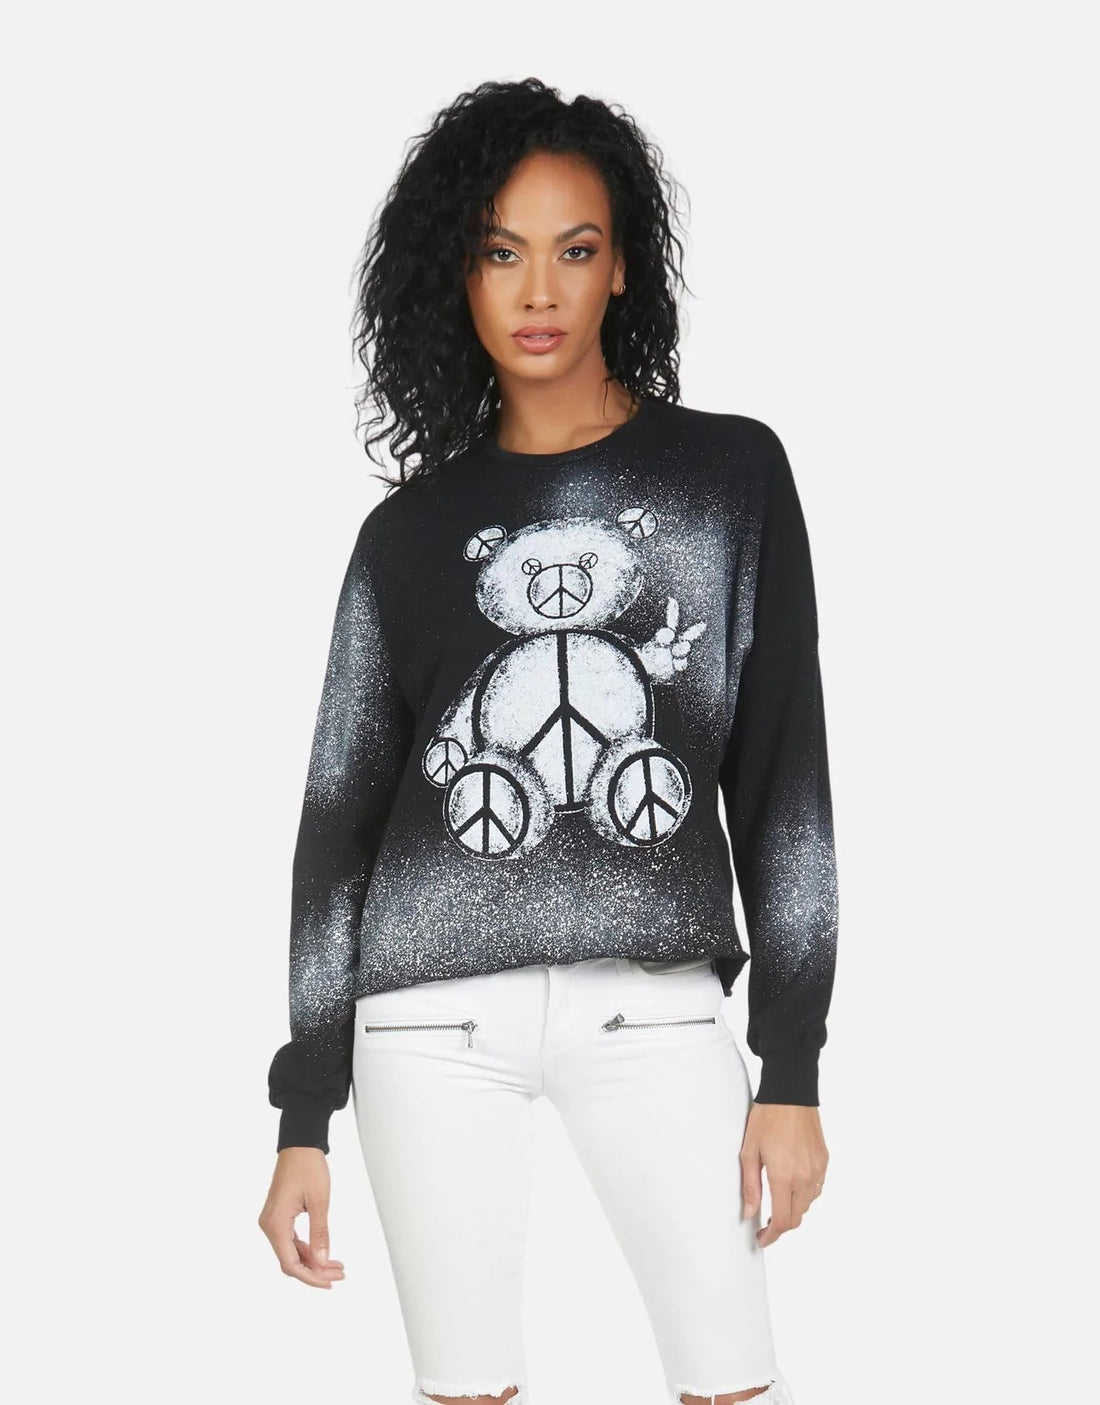 Shop Lauren Moshi Lee Peace Teddy Crew Sweater - Premium Sweater from Lauren Moshi Online now at Spoiled Brat 